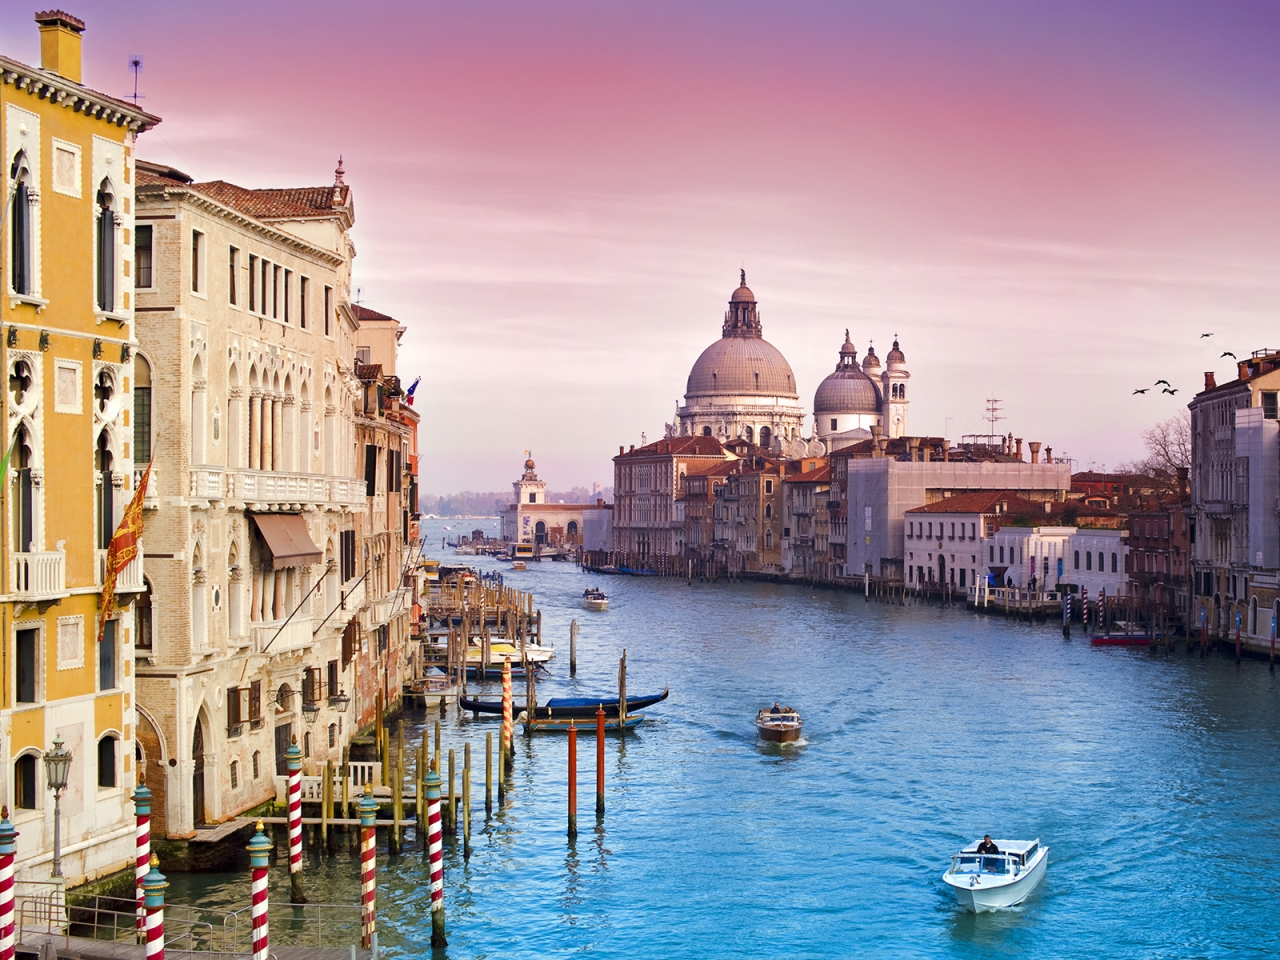 Veni Vidi Venice for 1280 x 960 resolution